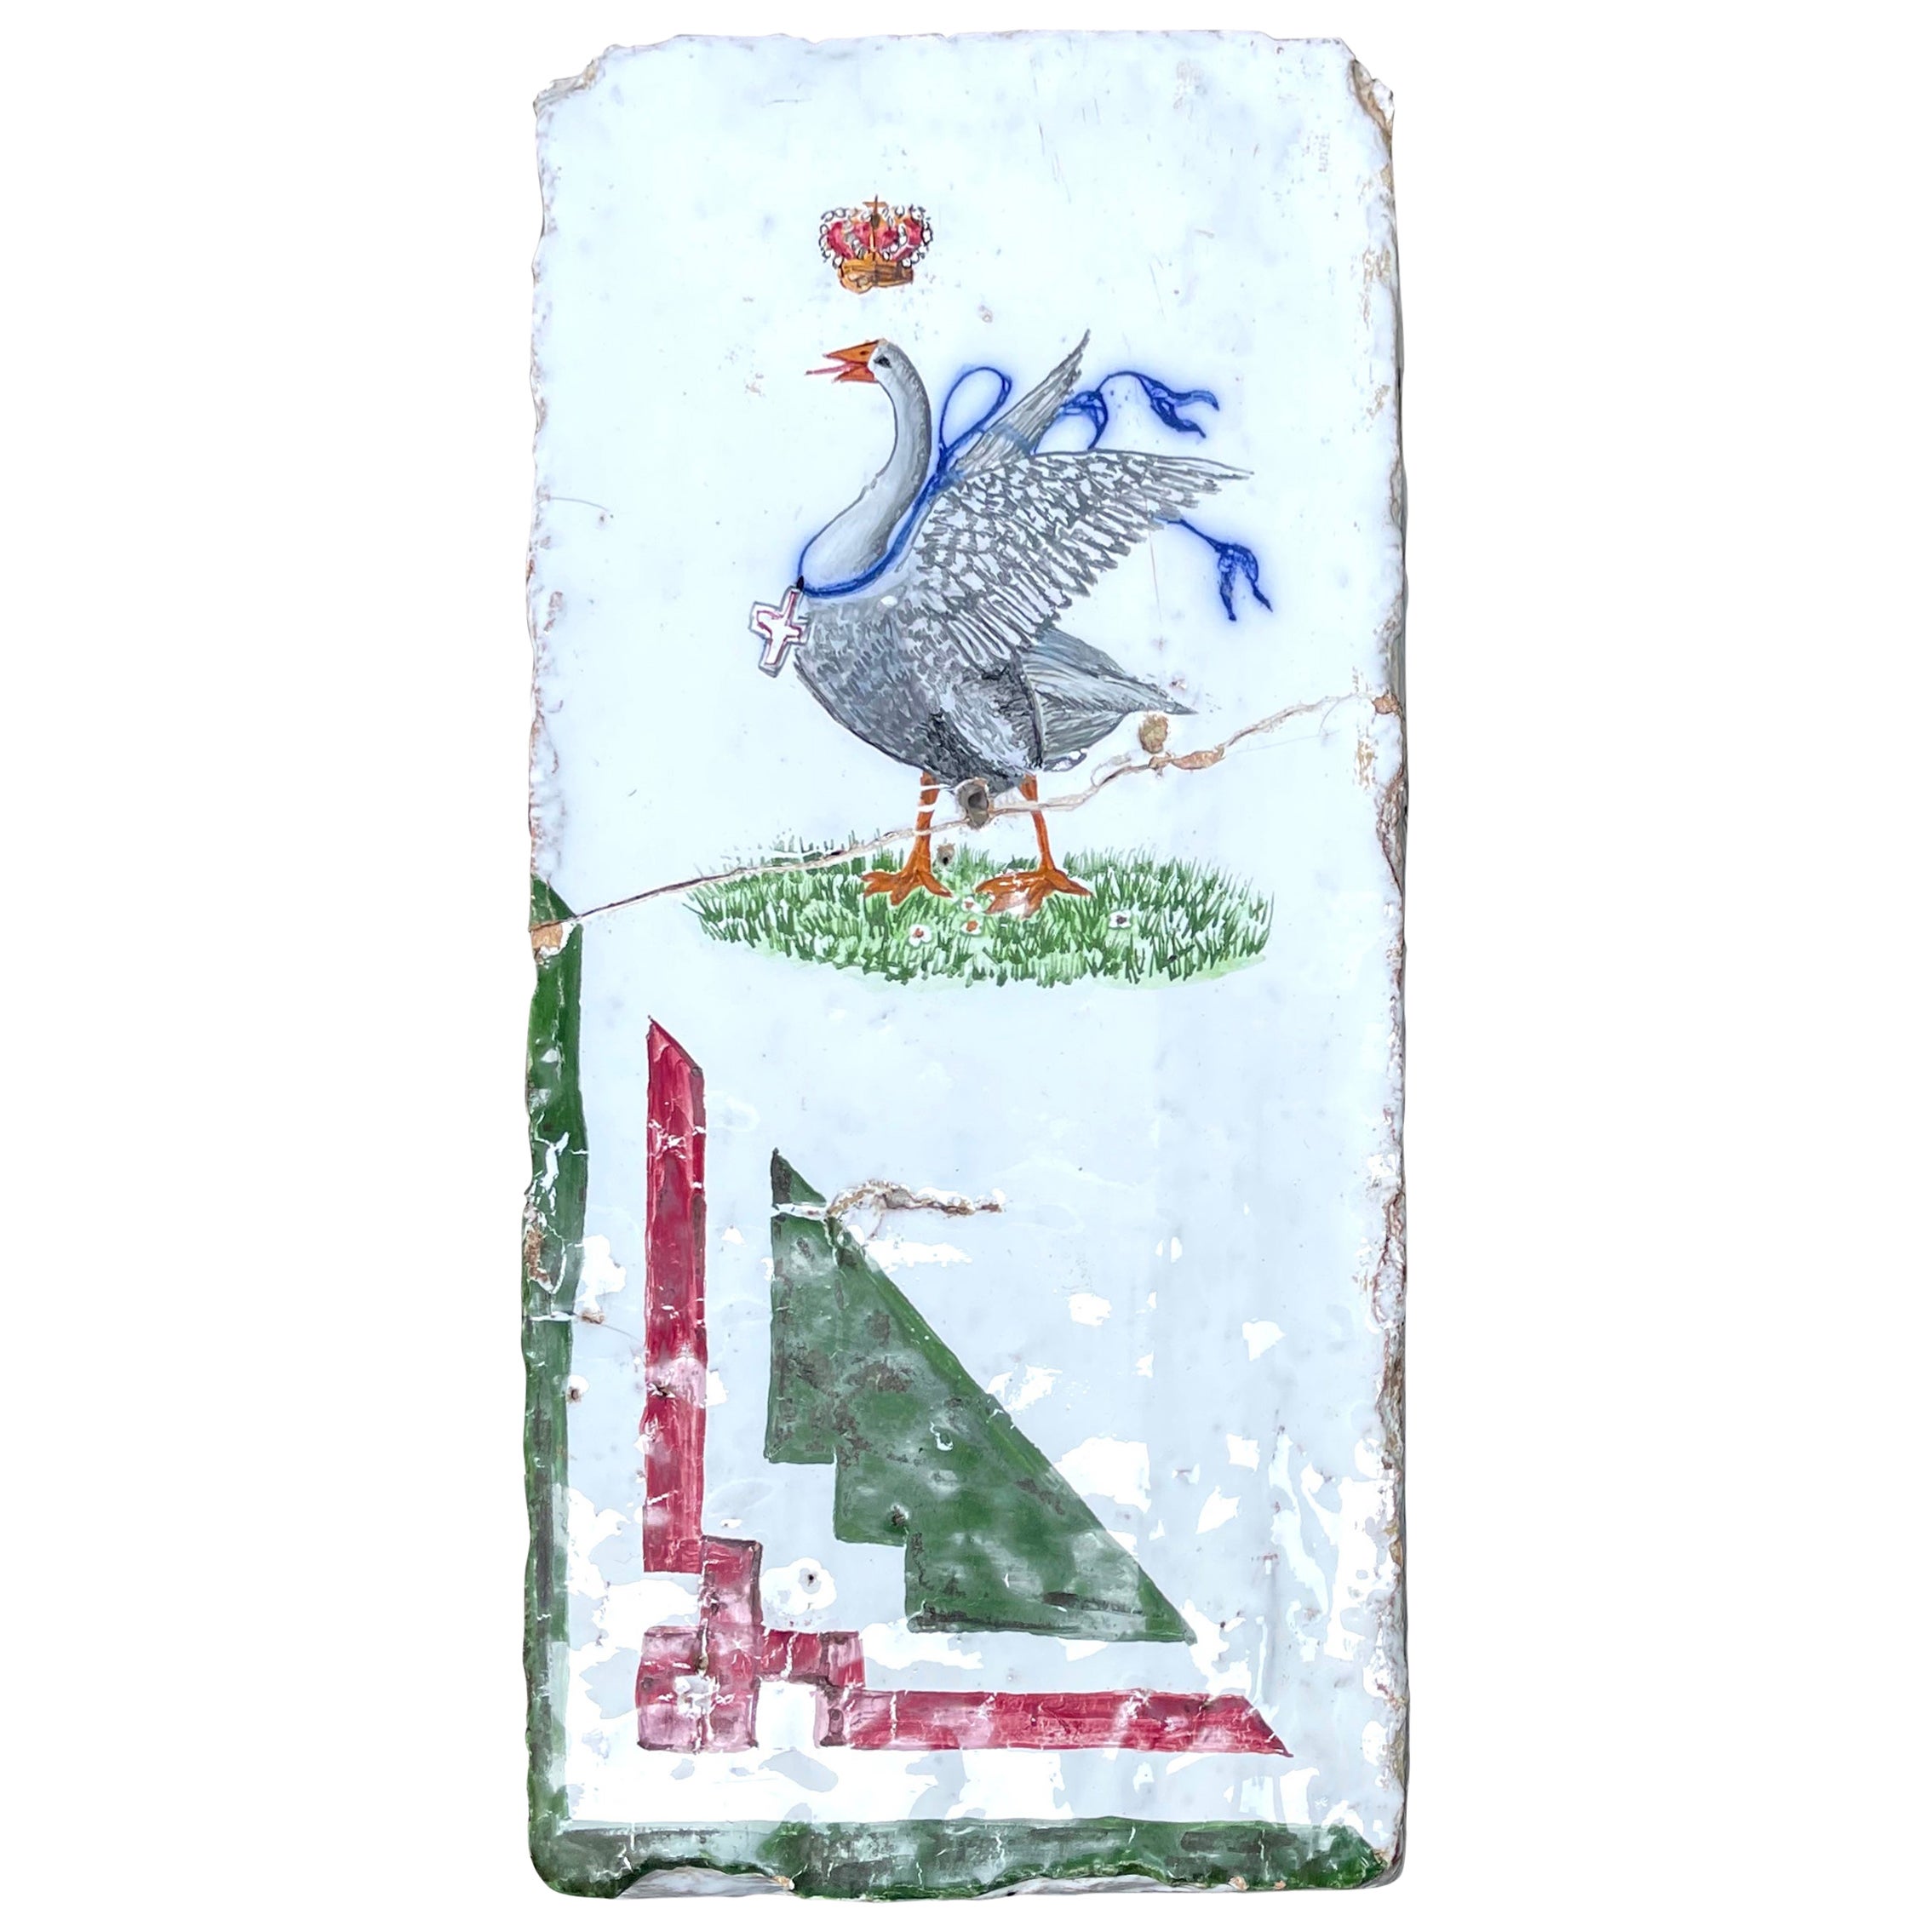 Palio Horse Race Goose Emblem For Sale